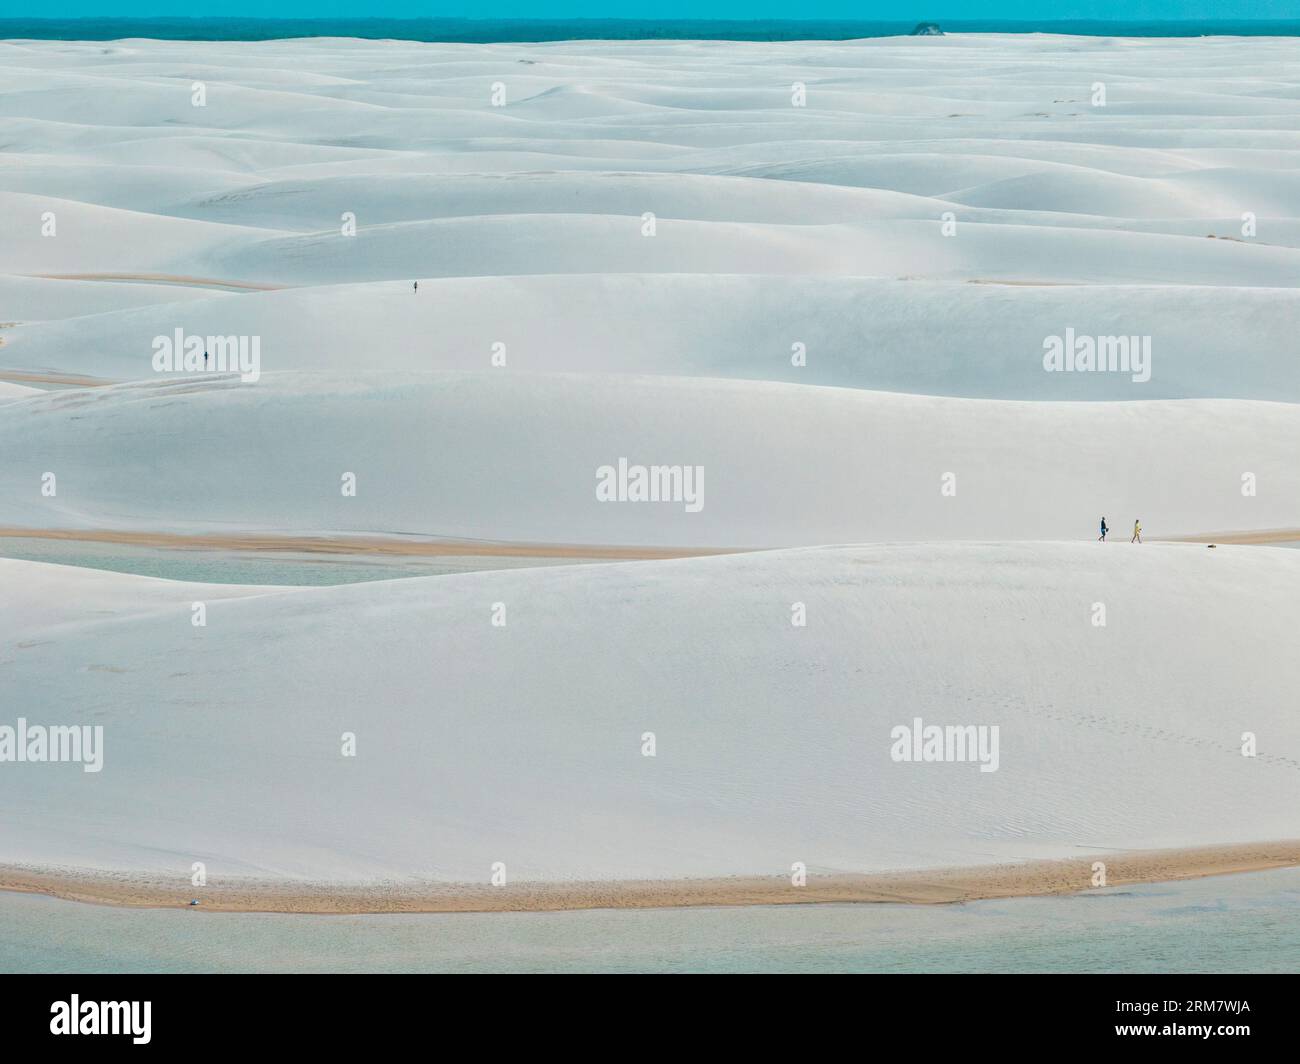 Vista aerea di Lencois Maranhenses. Dune di sabbia bianca con piscine di acqua fresca e trasparente. Deserto. Barreirinhas. Stato di Maranhao. Brasile Foto Stock